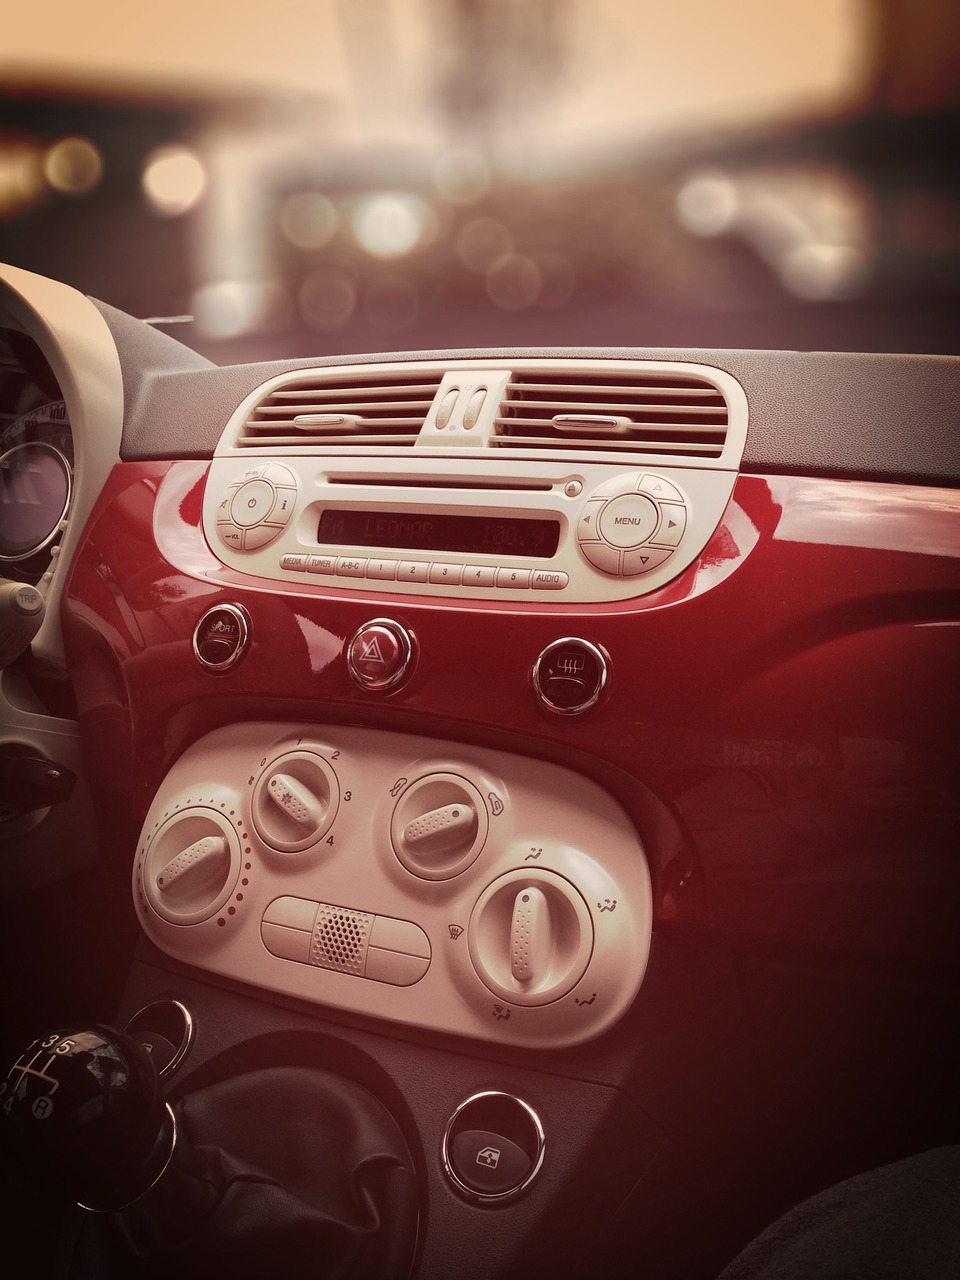 Alfa Romeo Giulia spalanie: Jak zoptymalizować zużycie paliwa w swoim samochodzie Alfa Romeo Giulia